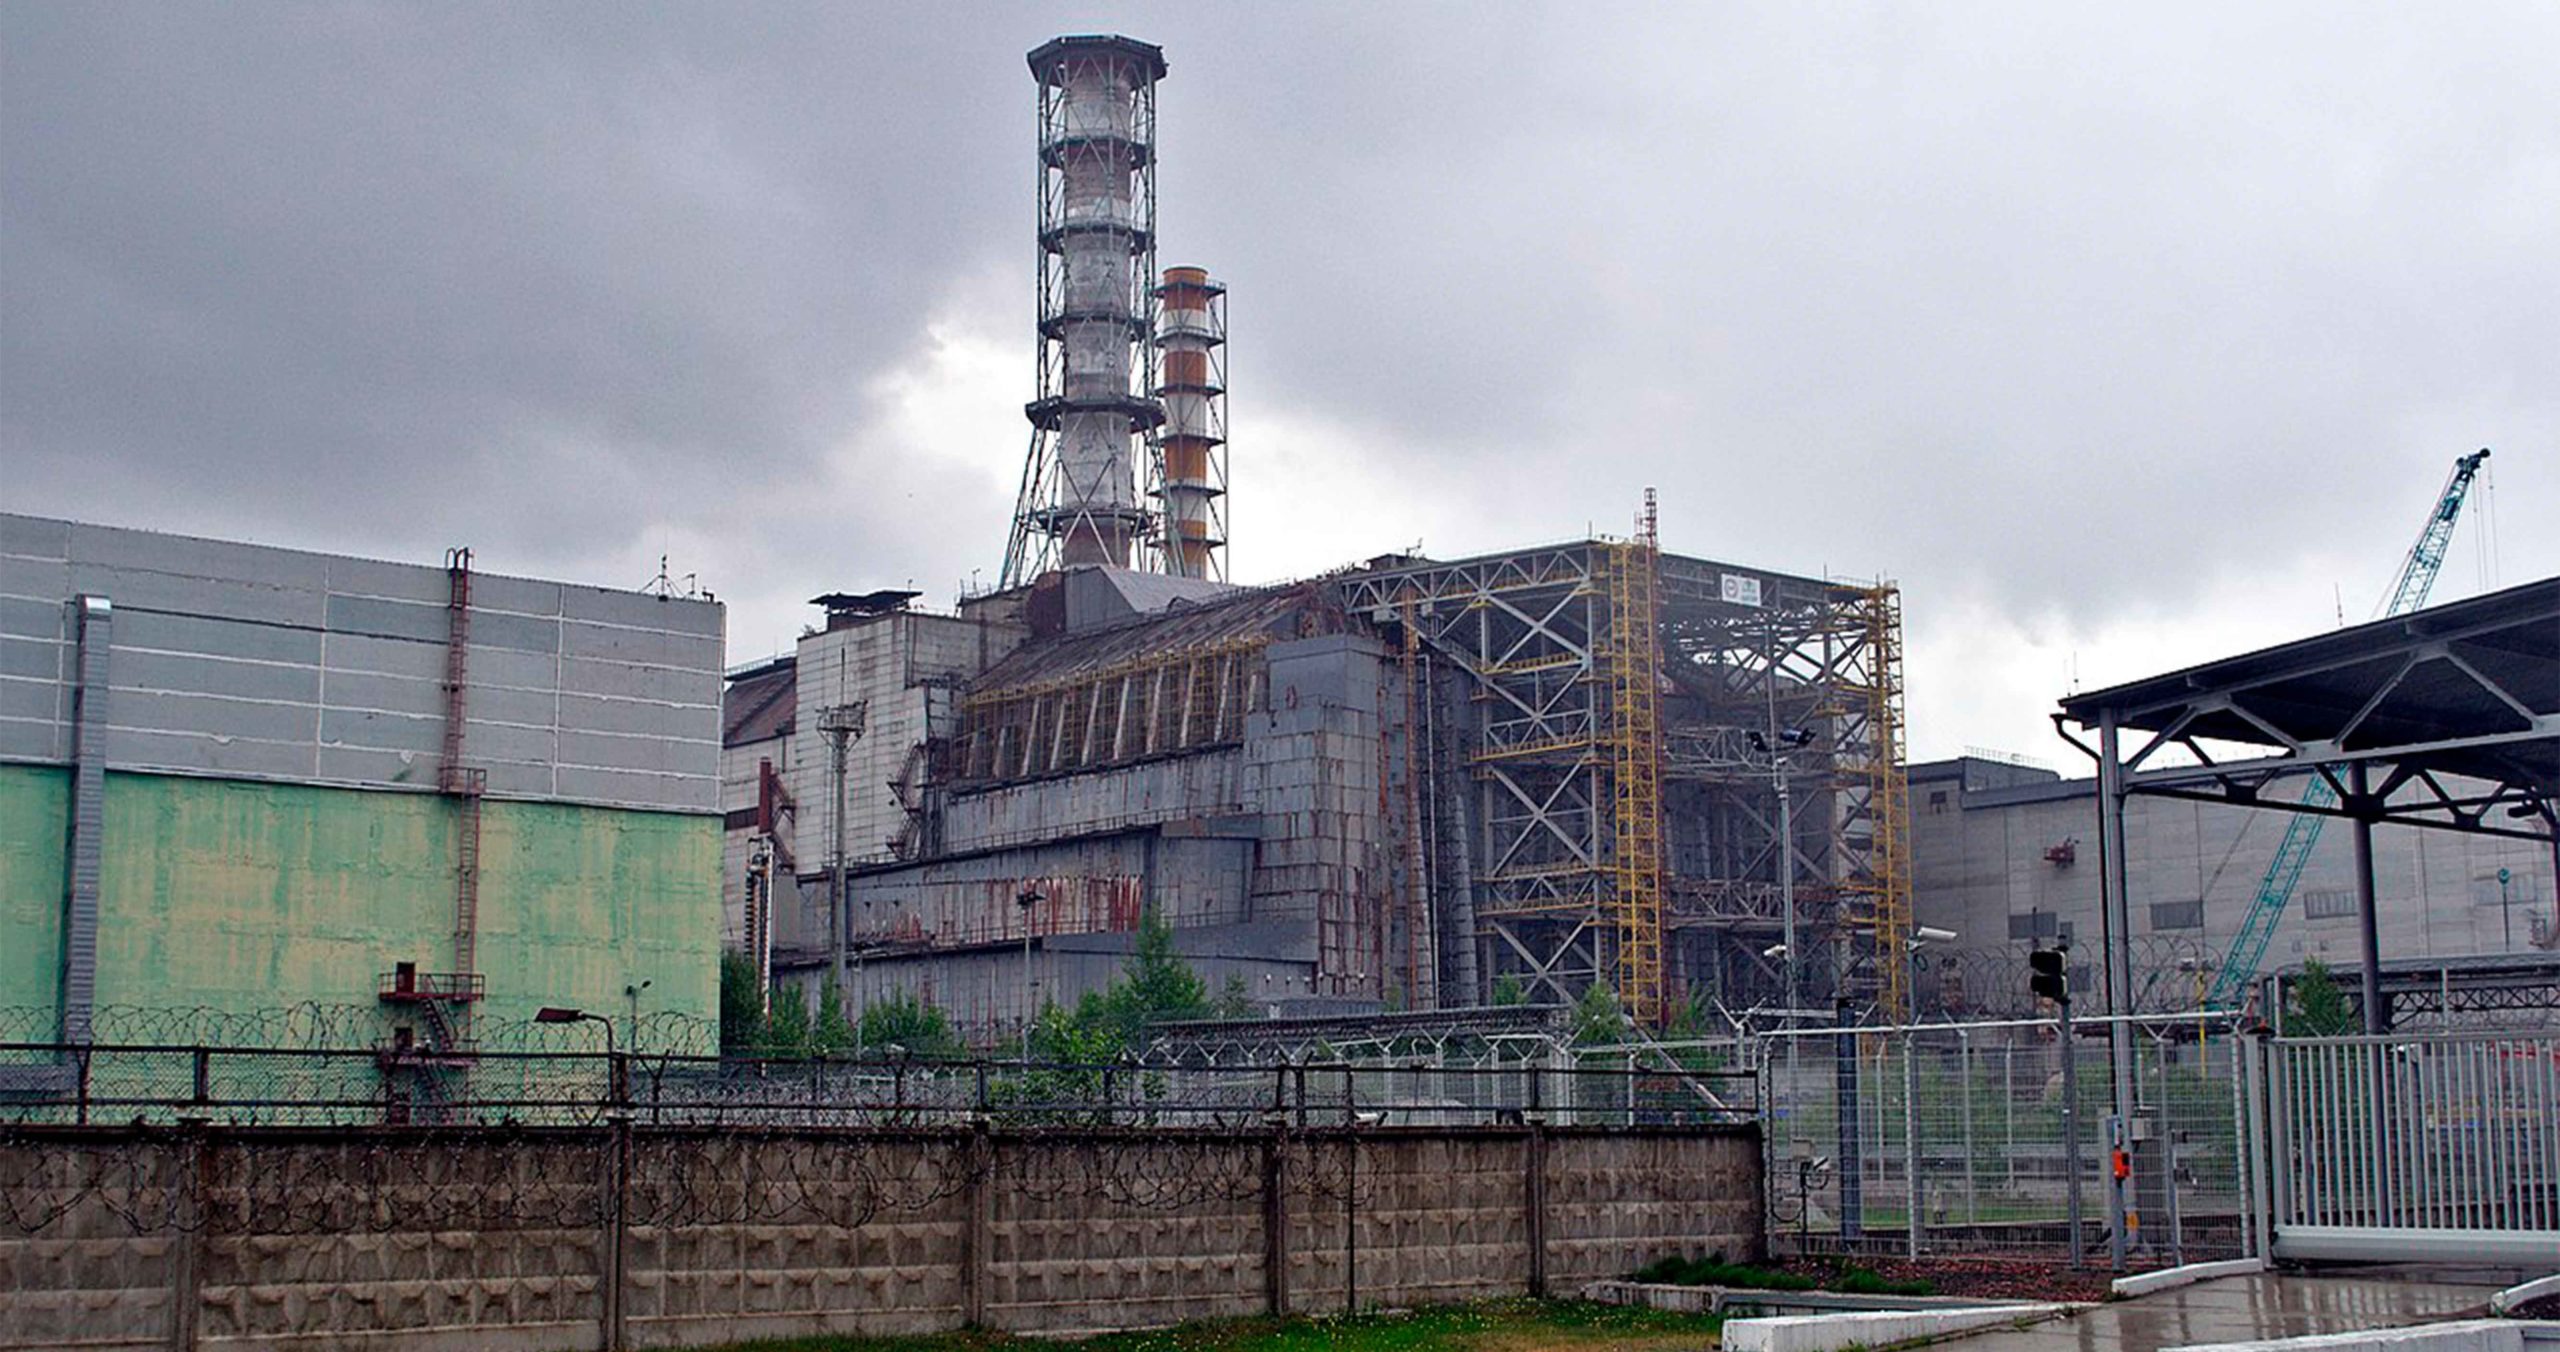 Sarcófagos chernobyl